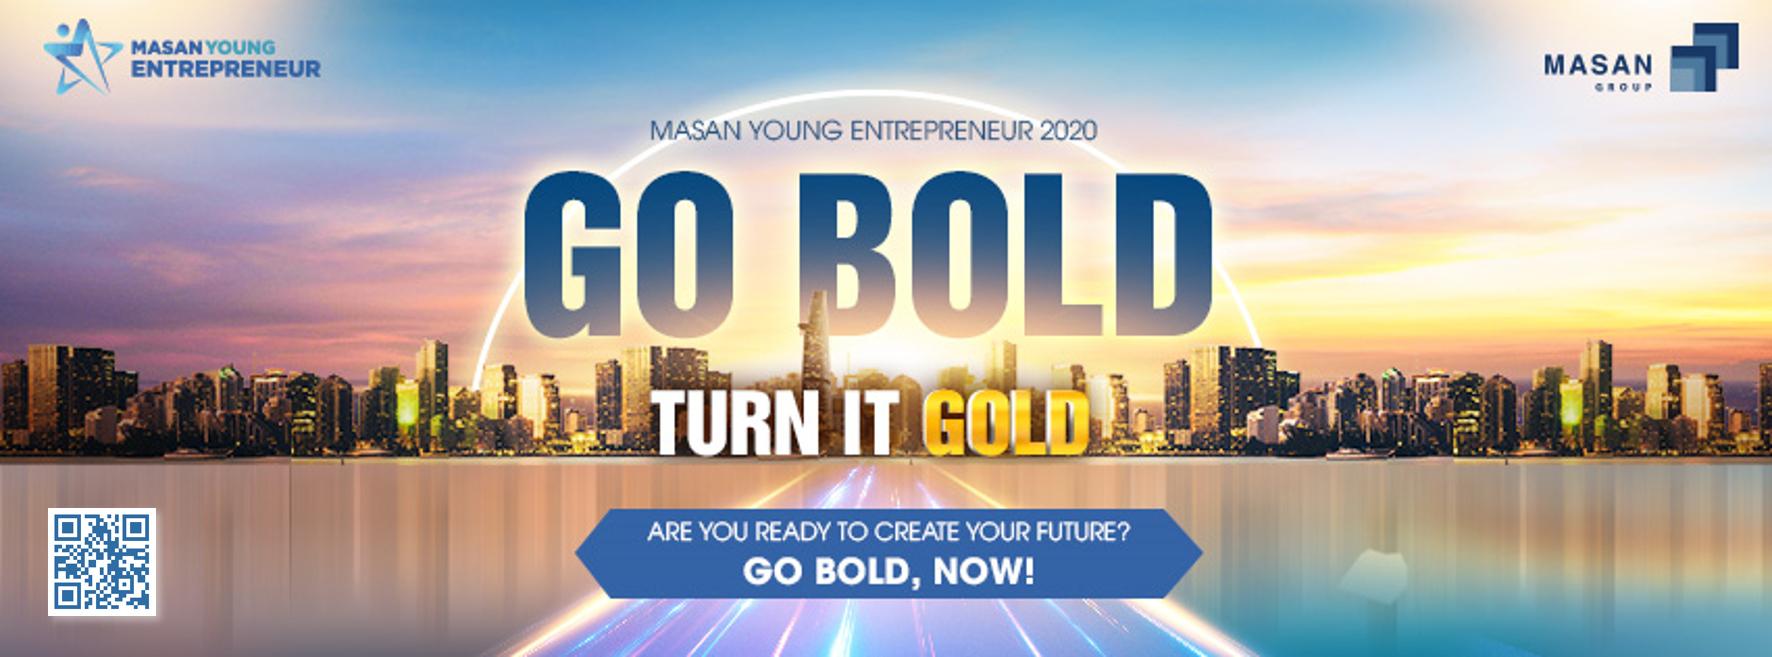 Chương trình Masan Young Entrepreneur 2020 (MYE 2020) đã bắt đầu - Xã hội học - Công tác xã hội